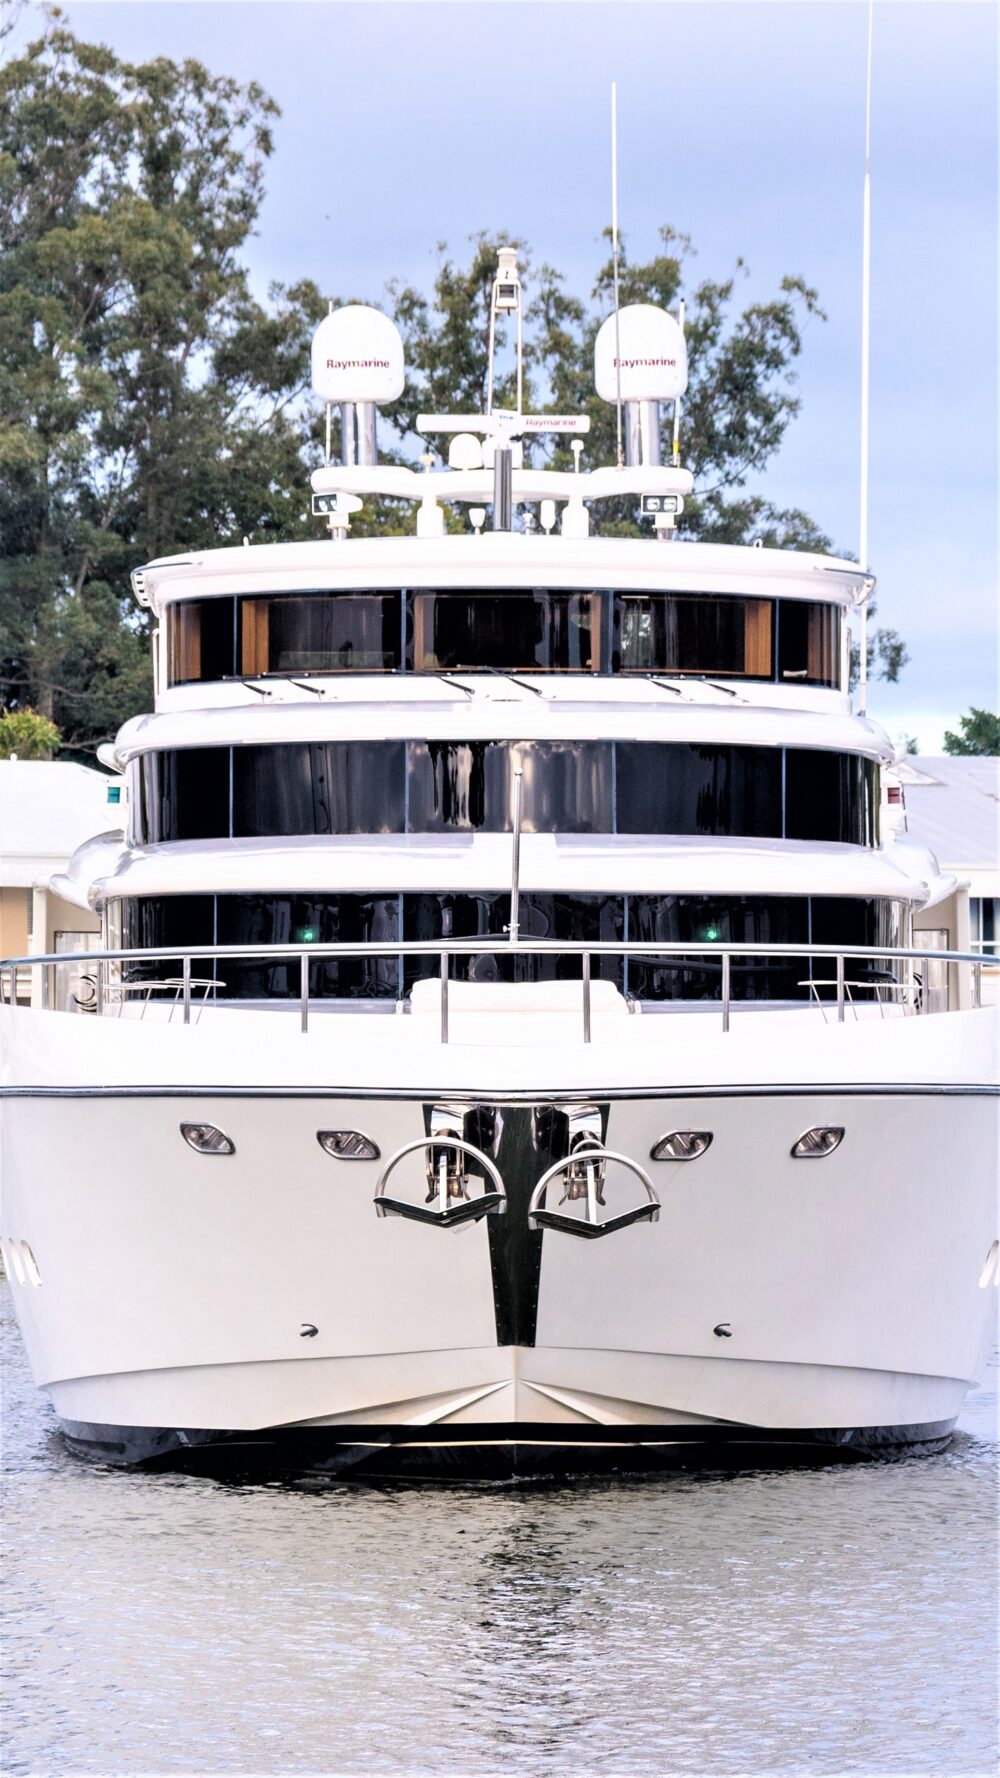 rhapsody ii yacht owner